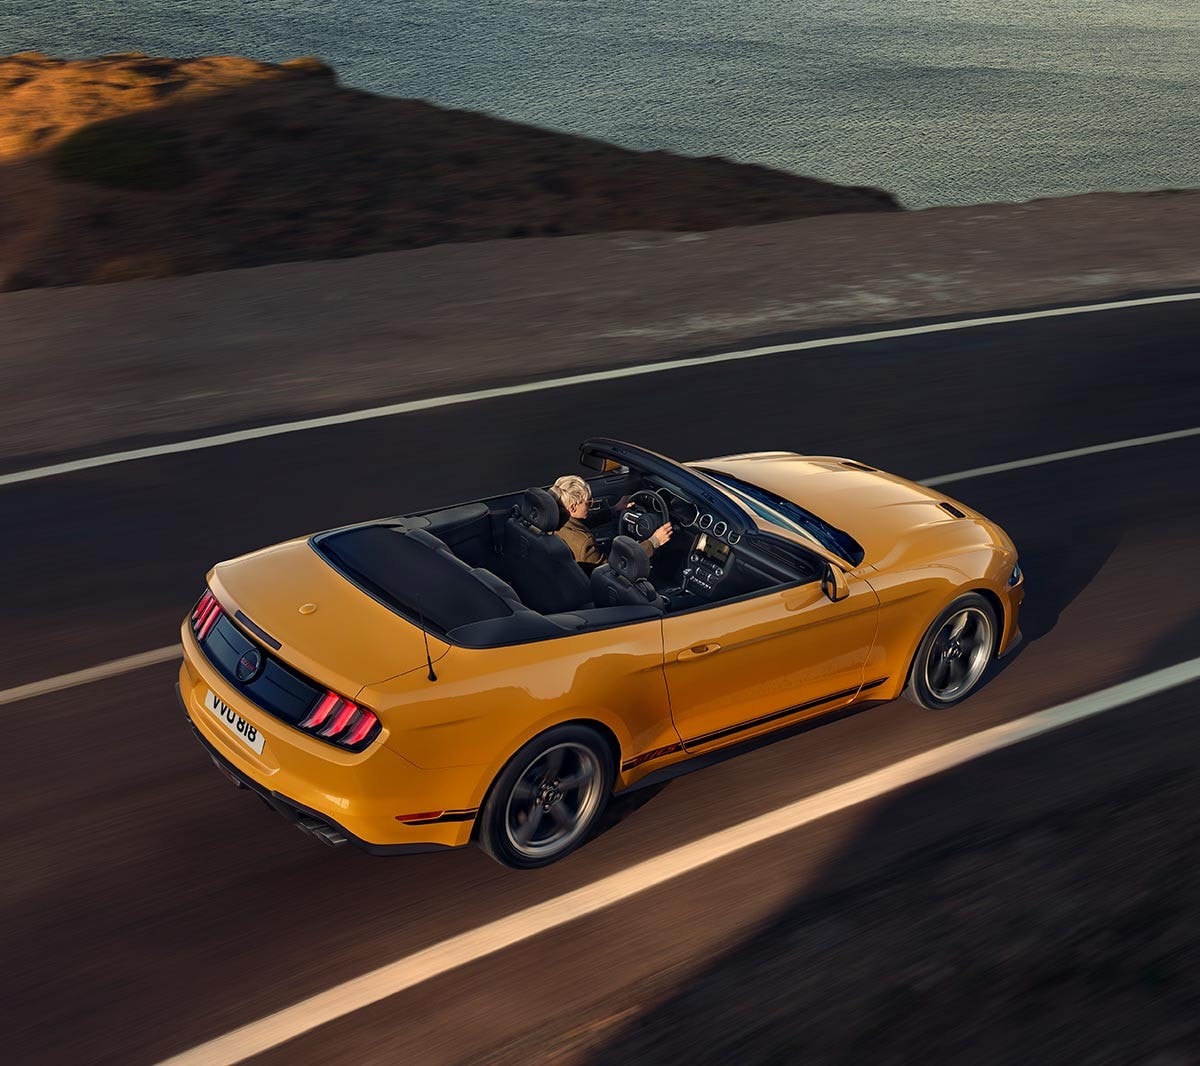 Ford Mustang California couleur orange. Vue arrière aux trois quarts, roulant sur une route.